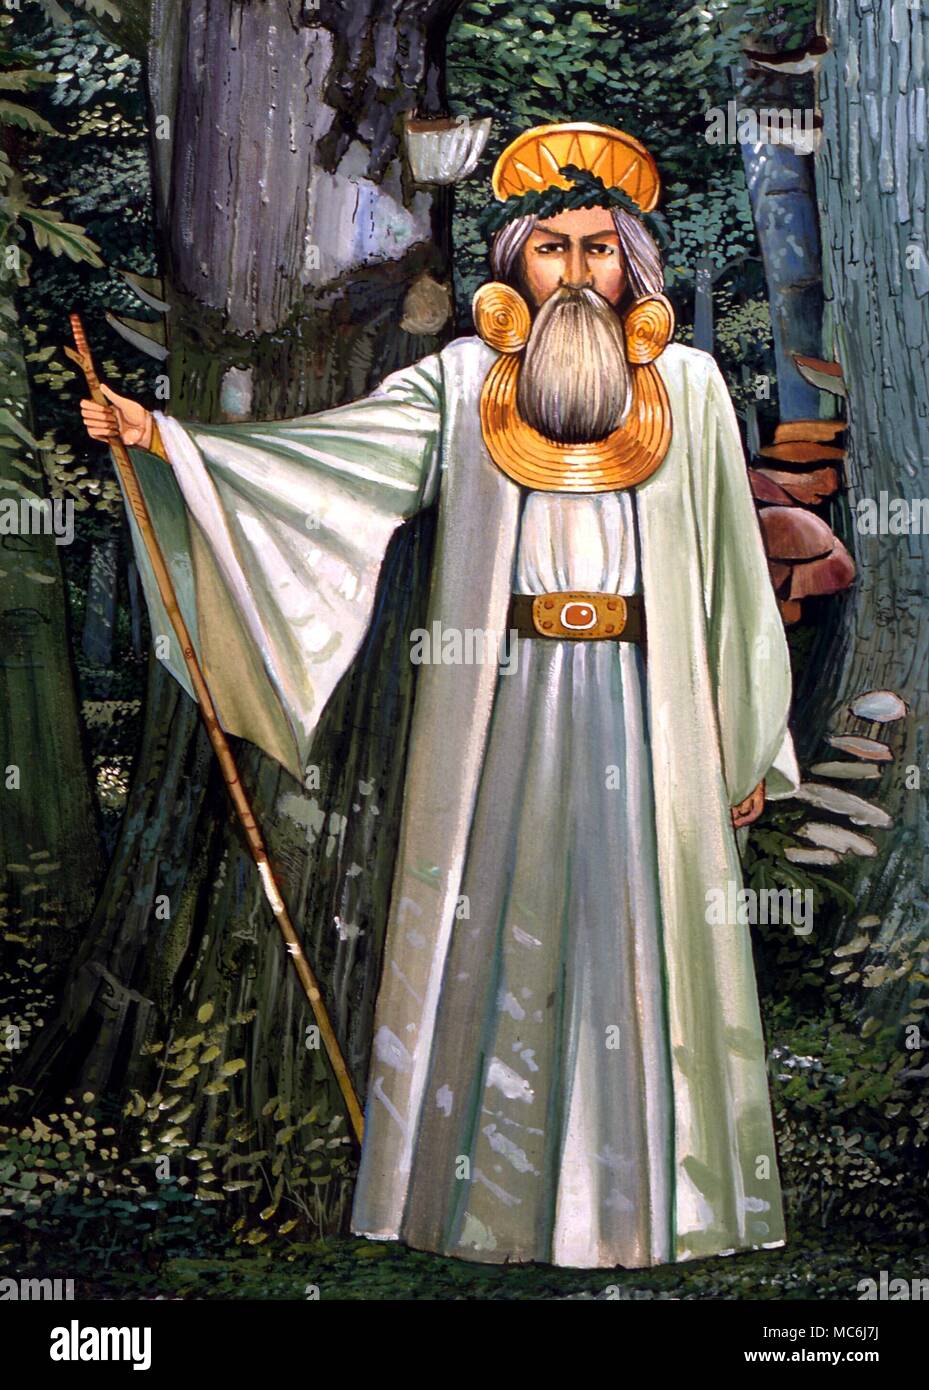 Sacerdote druida en bosque, vistiendo diversos ornamentos llamada "céltica" atribuido tradicionalmente al sacerdocio. Pintura por Gordon Wain, 1989 Foto de stock